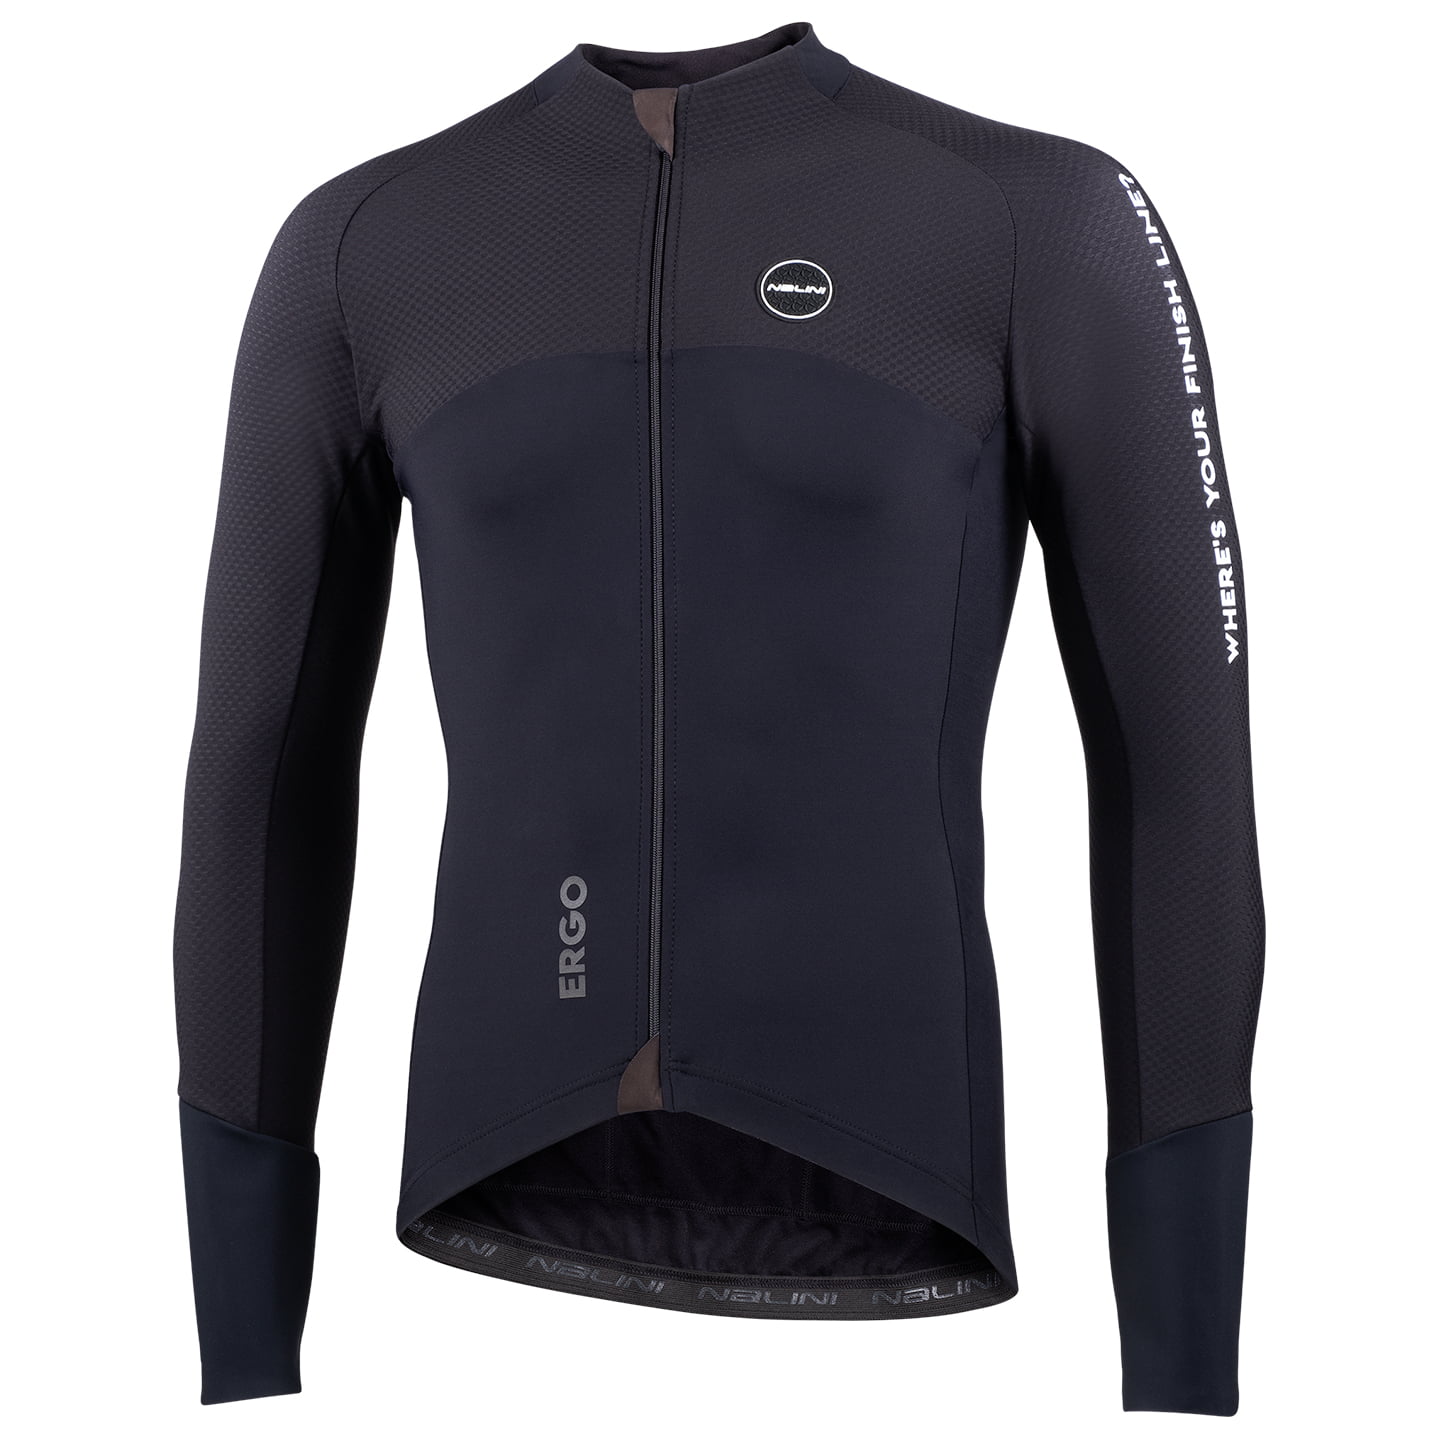 NALINI Trikotjacke New Ergo XWarm Jersey / Jacket, for men, size M, Cycle jacket, Cycling clothing